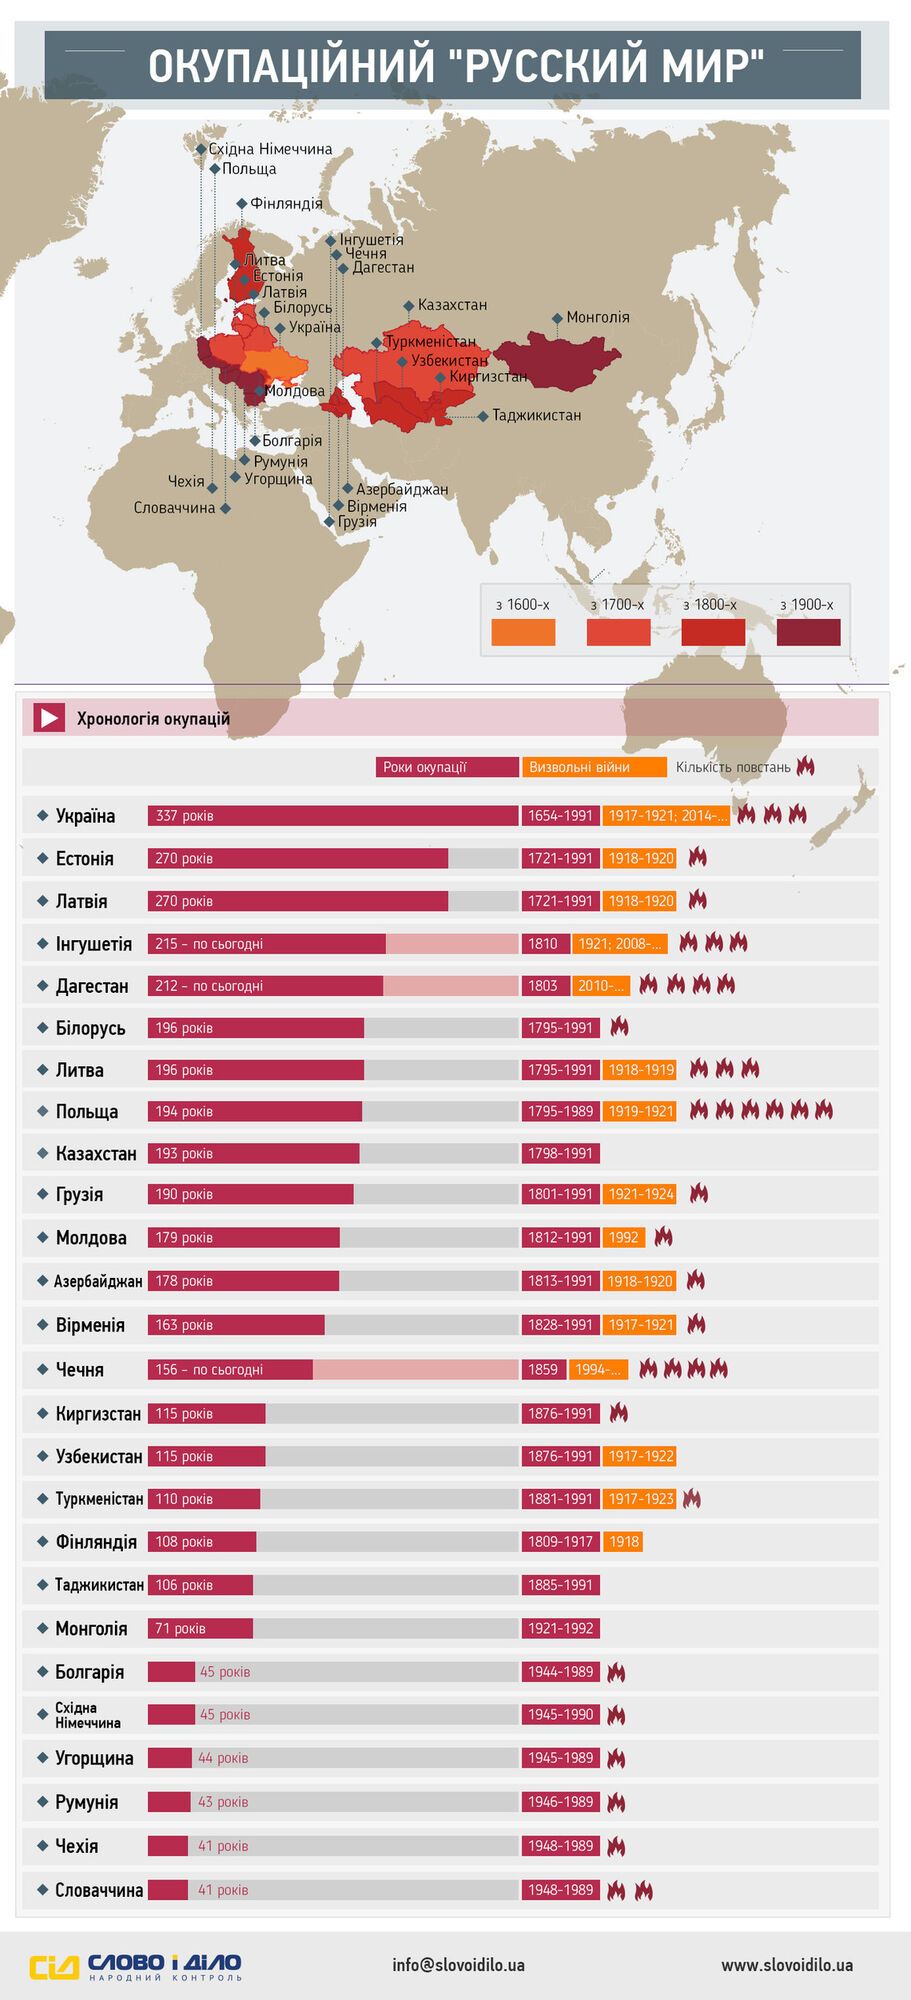 За время своего существования Россия оккупировала 26 стран: инфографика